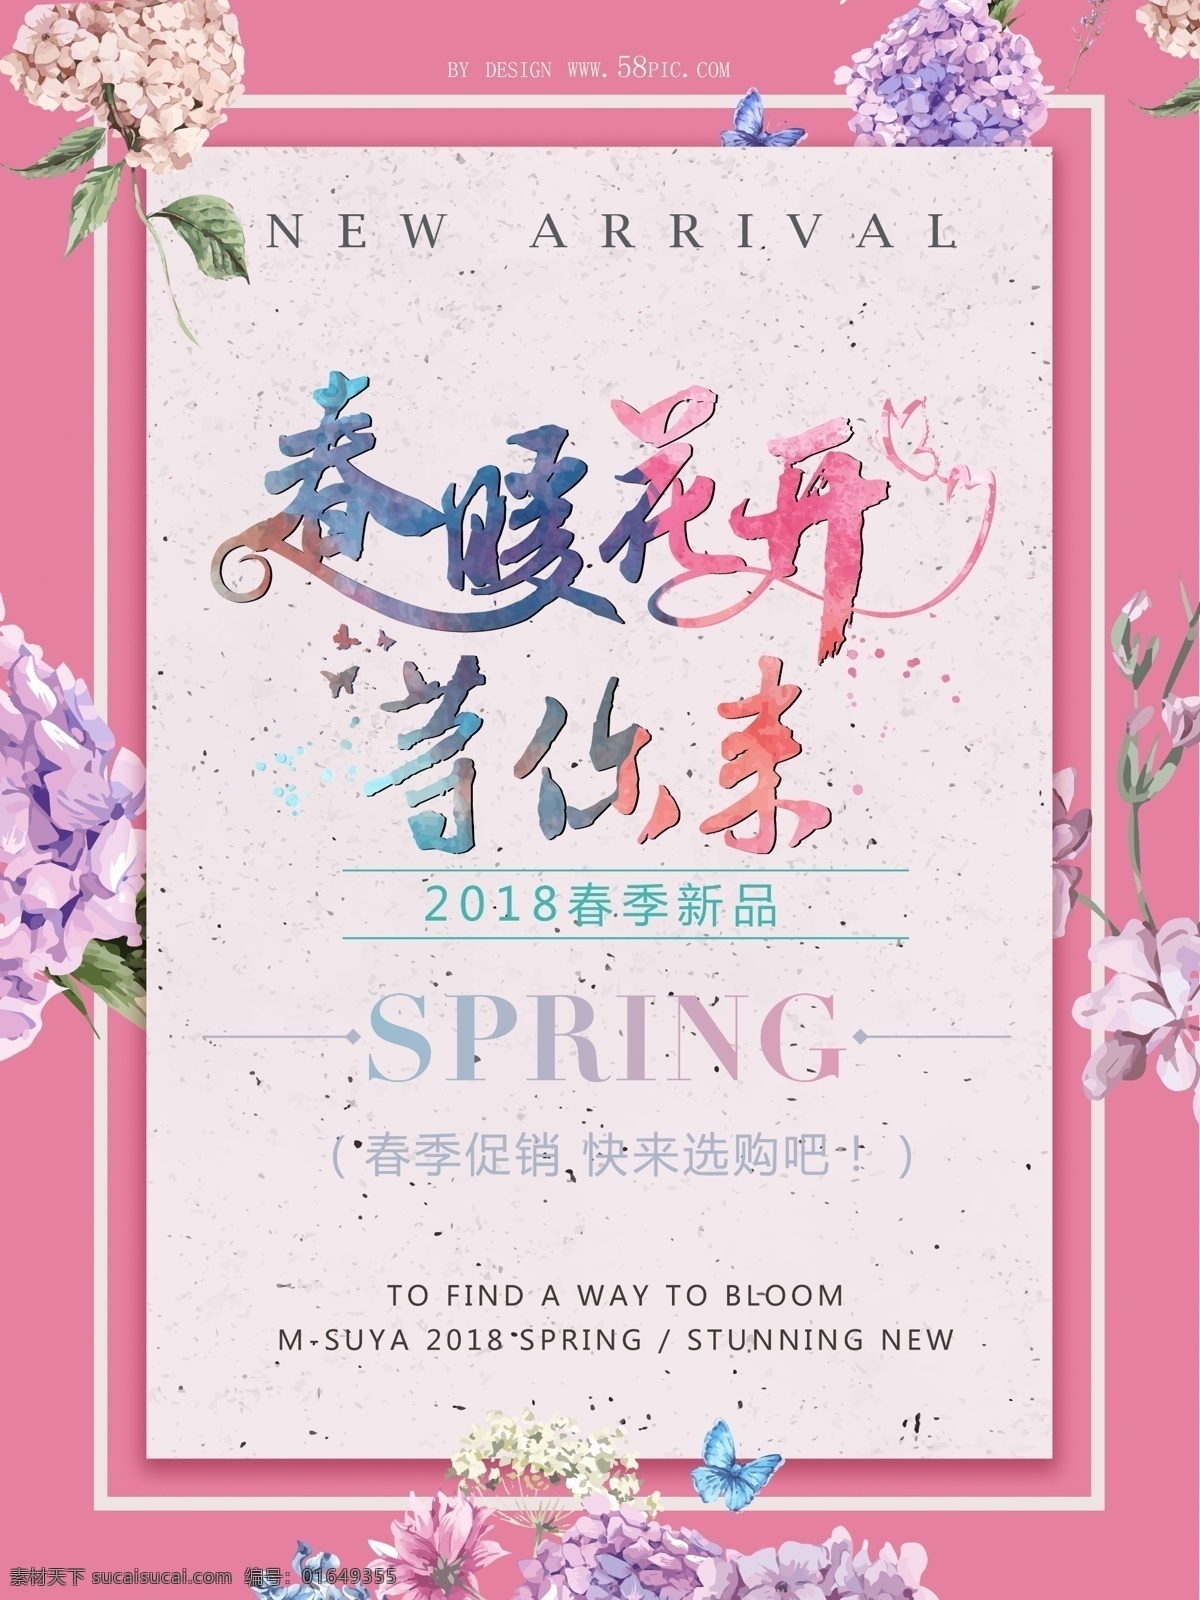 春暖花开 春季 促销 模板 2018 新品 psd模板 spring 春季促销 促销海报设计 等你来 粉色背景 花朵 快来抢购吧